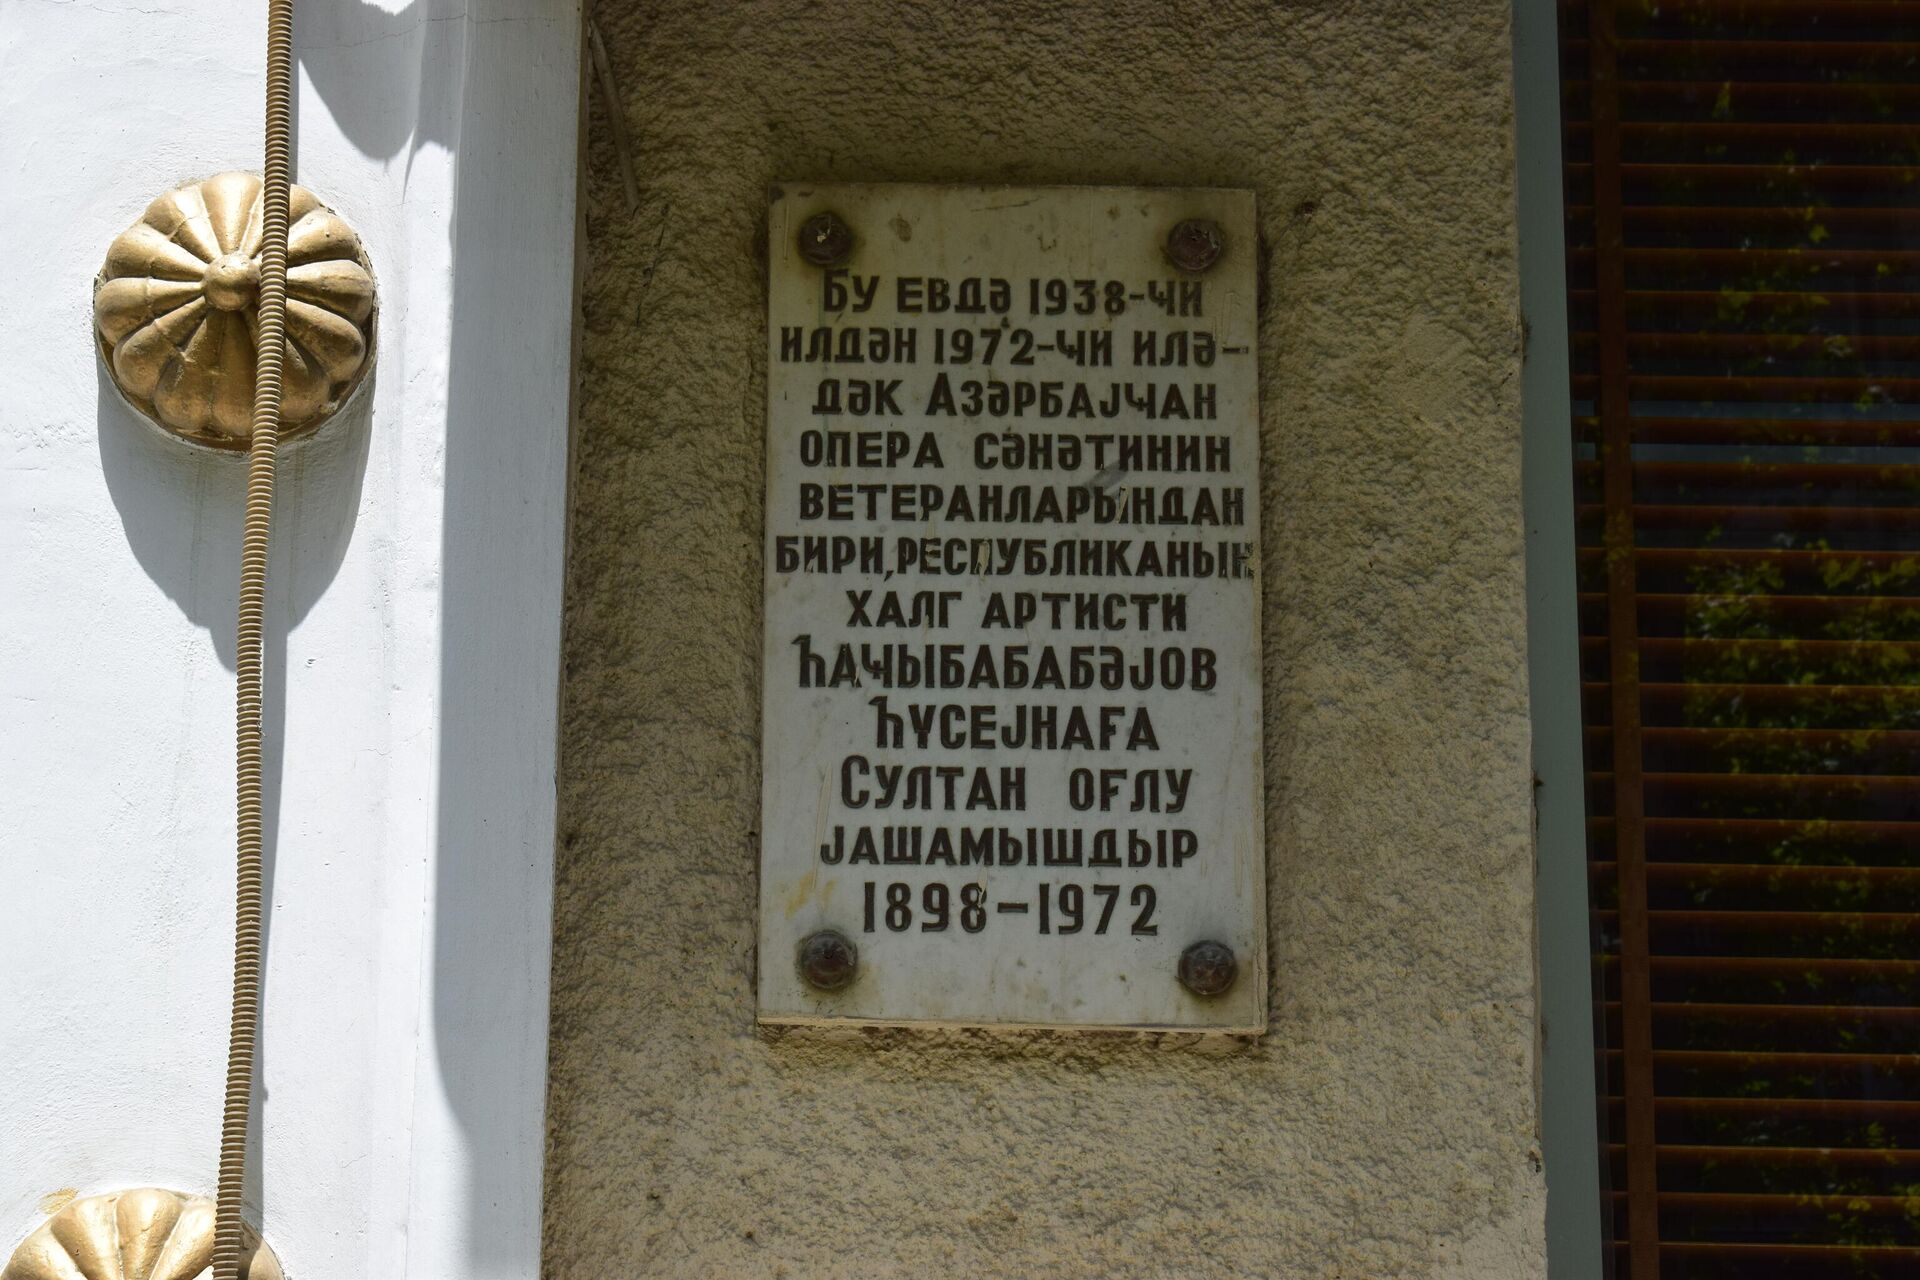 Hüseynağa Hacıbababəyovun yaşadığı evin qarşısında lövhə - Sputnik Azərbaycan, 1920, 25.07.2022